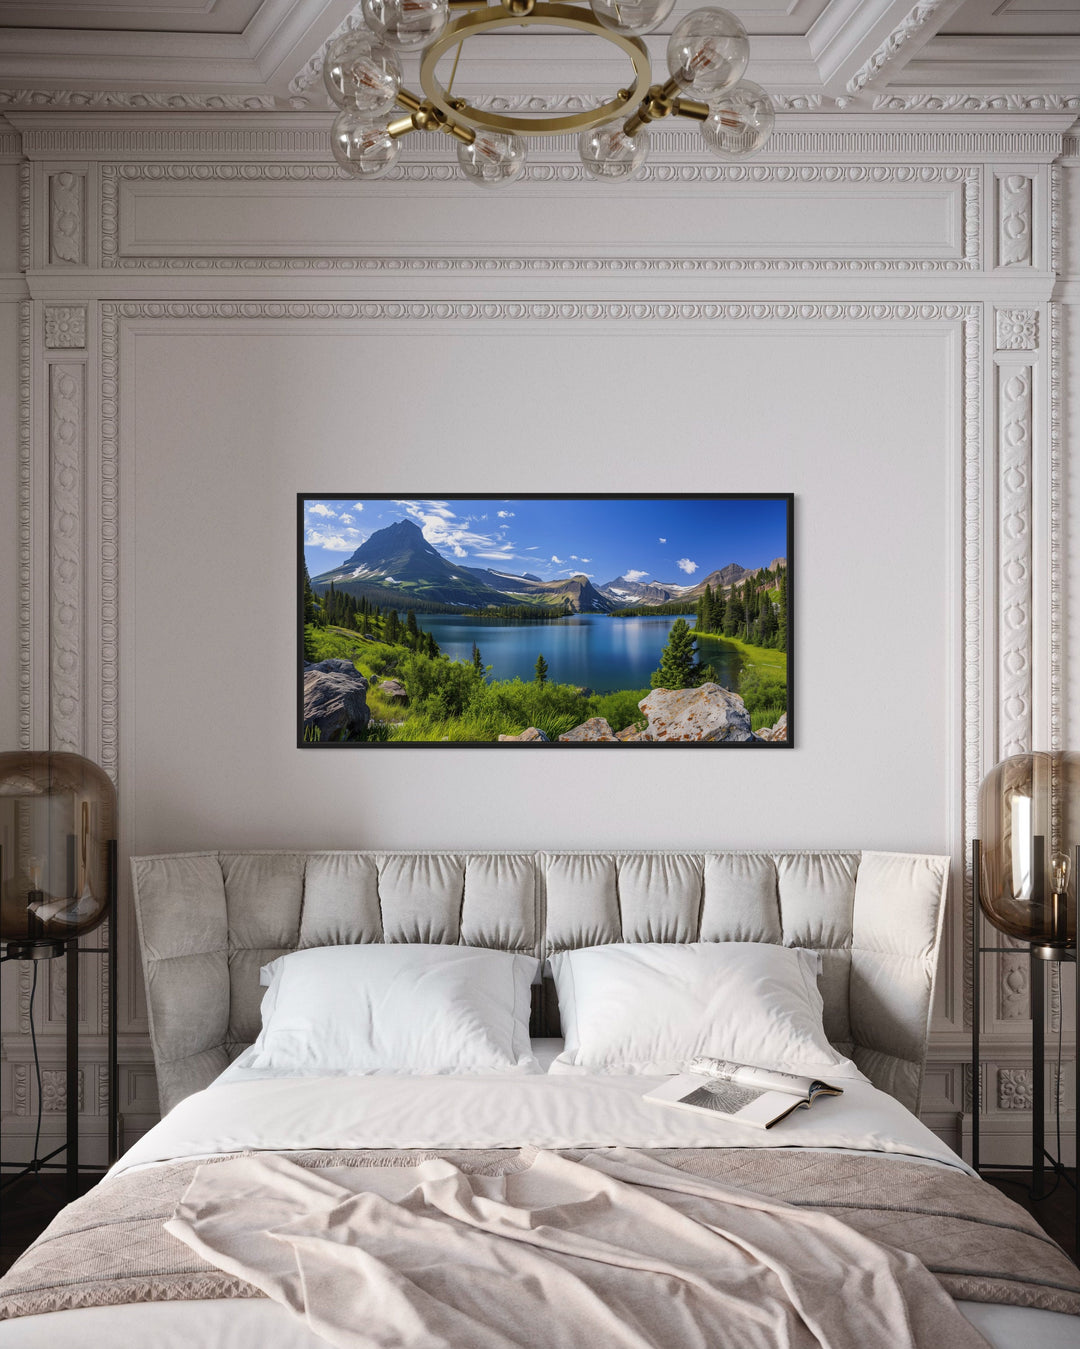 Glacier National Park Montana Landscape Framed Canvas Wall Art in bed room